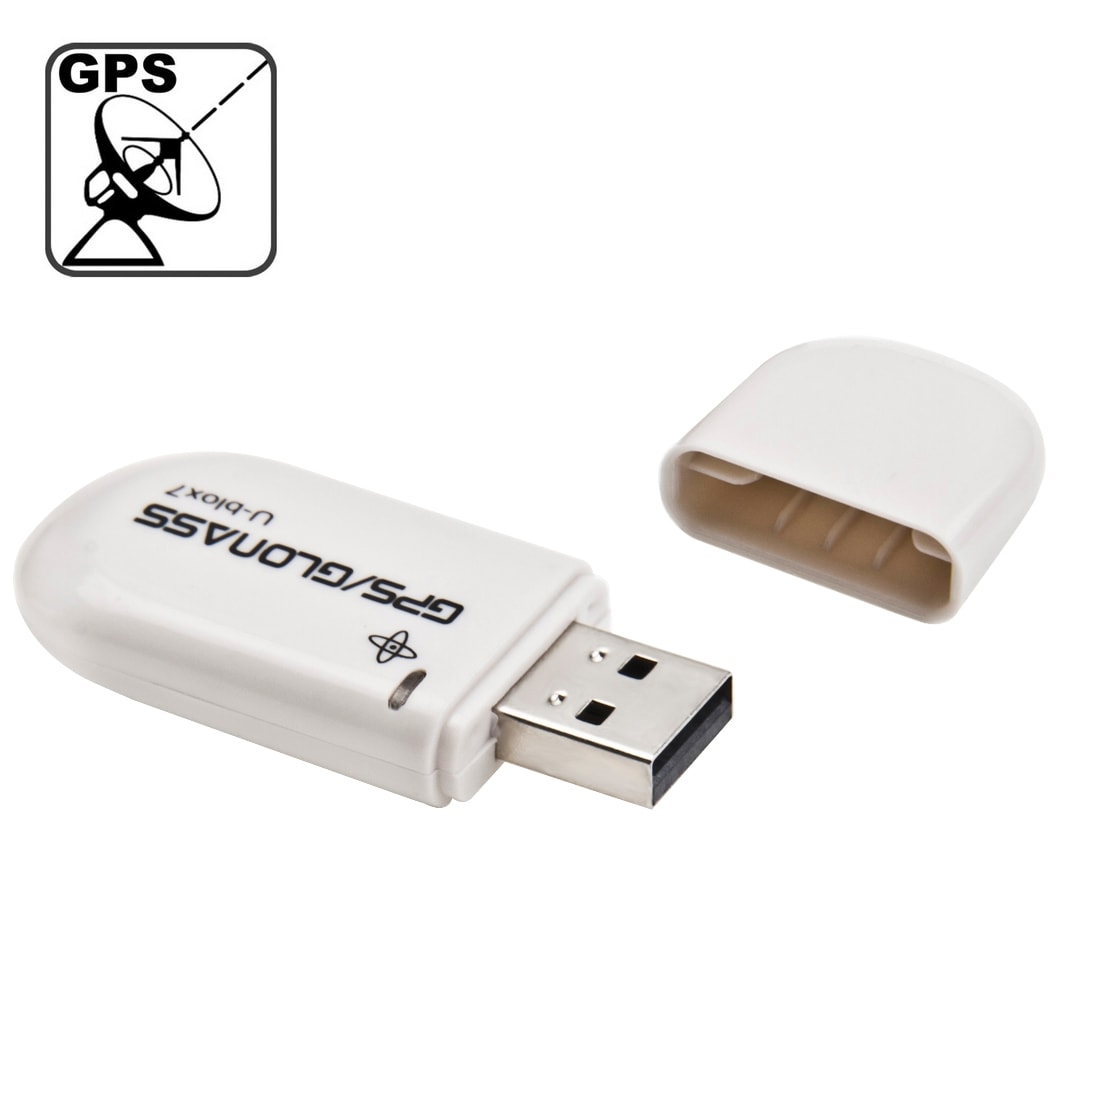 GPS mottaker USB A-GPS